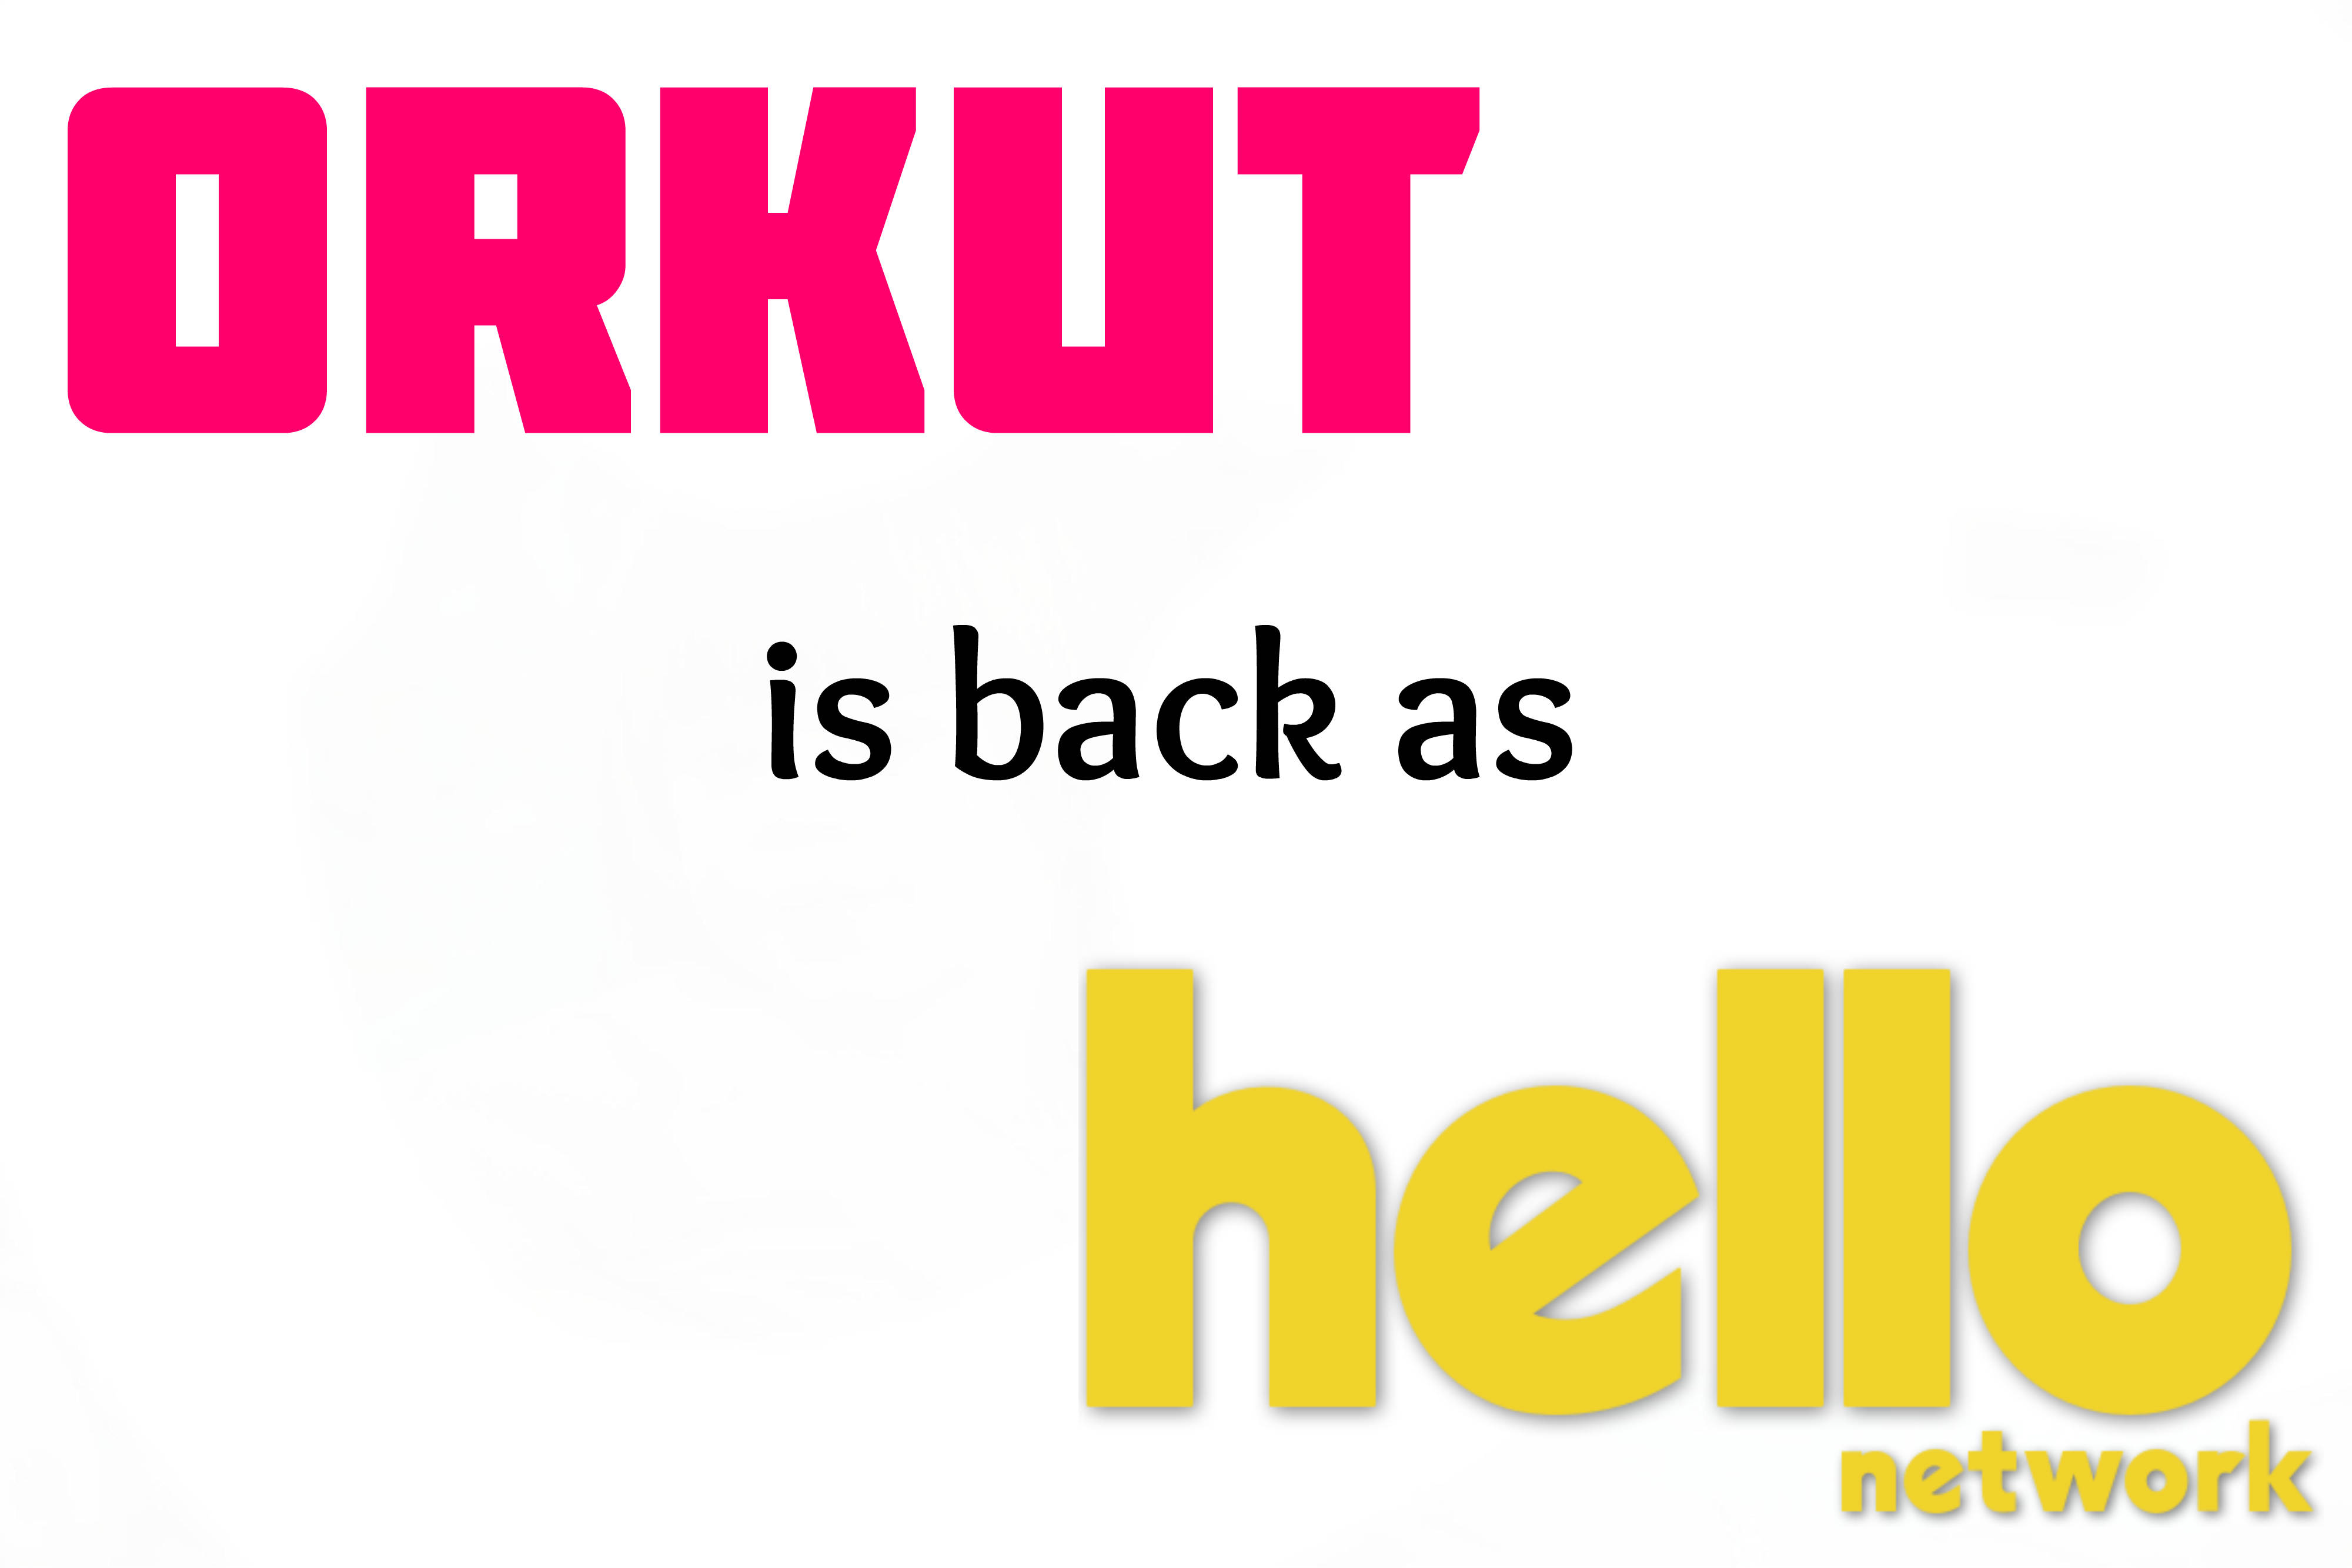 Hello Orkut